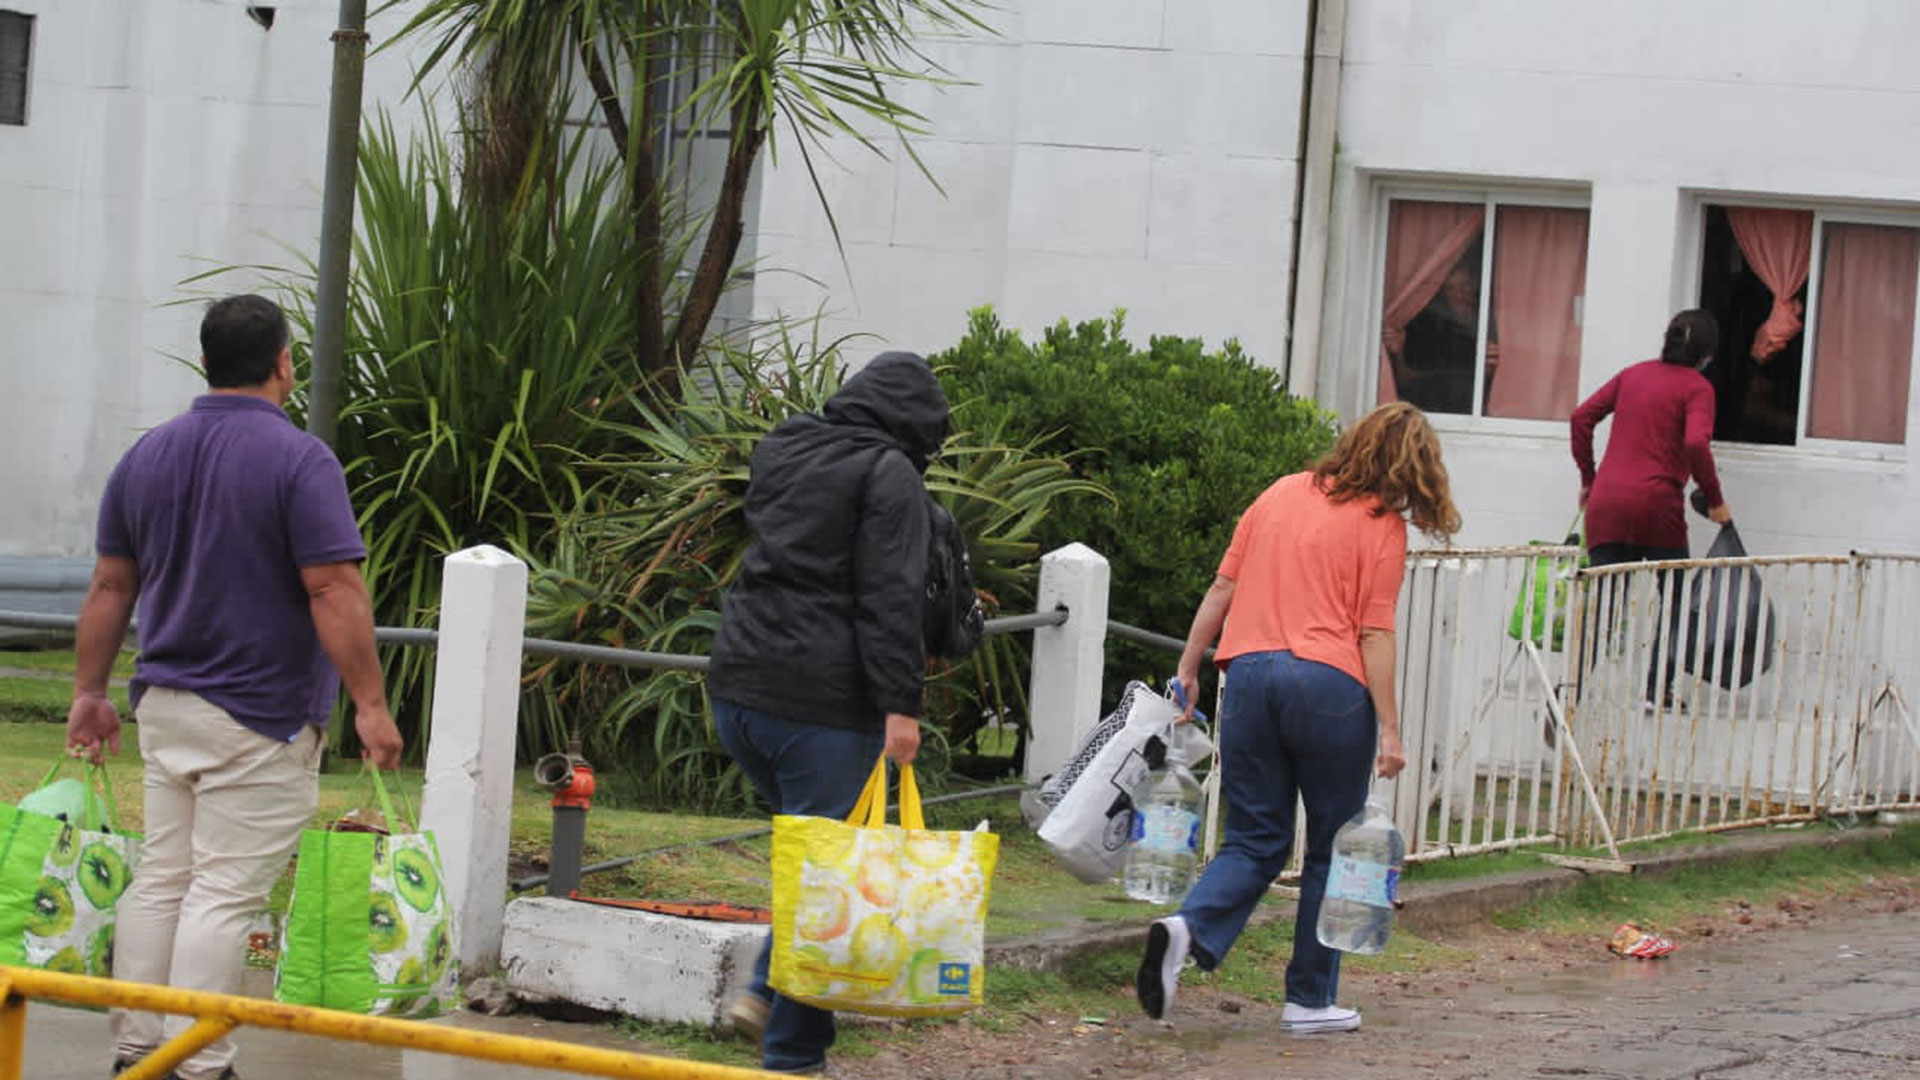 Miércoles 11 de enero. Bajo la lluvia y con bolsas de comida, los familiares de los rugbiers llegaron al penal de Dolores para la visita semanal (Ezequiel Acuña)